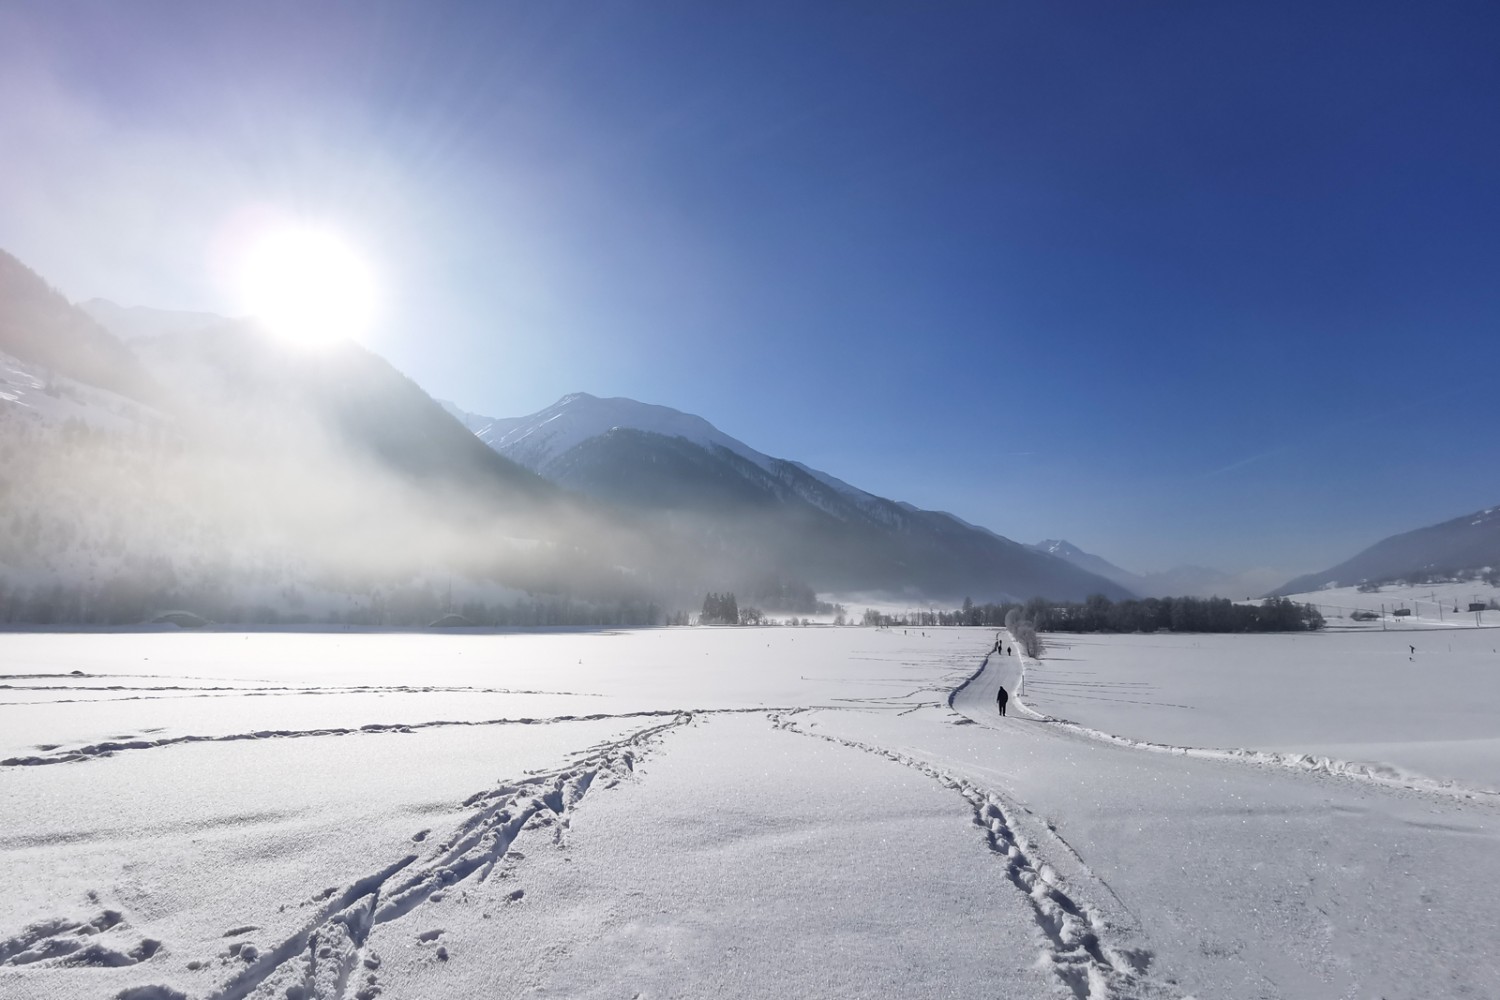 Viel Sonne, Licht und Weite gibt es auf den Winterwanderwegen im weiten Talboden des Obergoms. Bild: Andreas Staeger